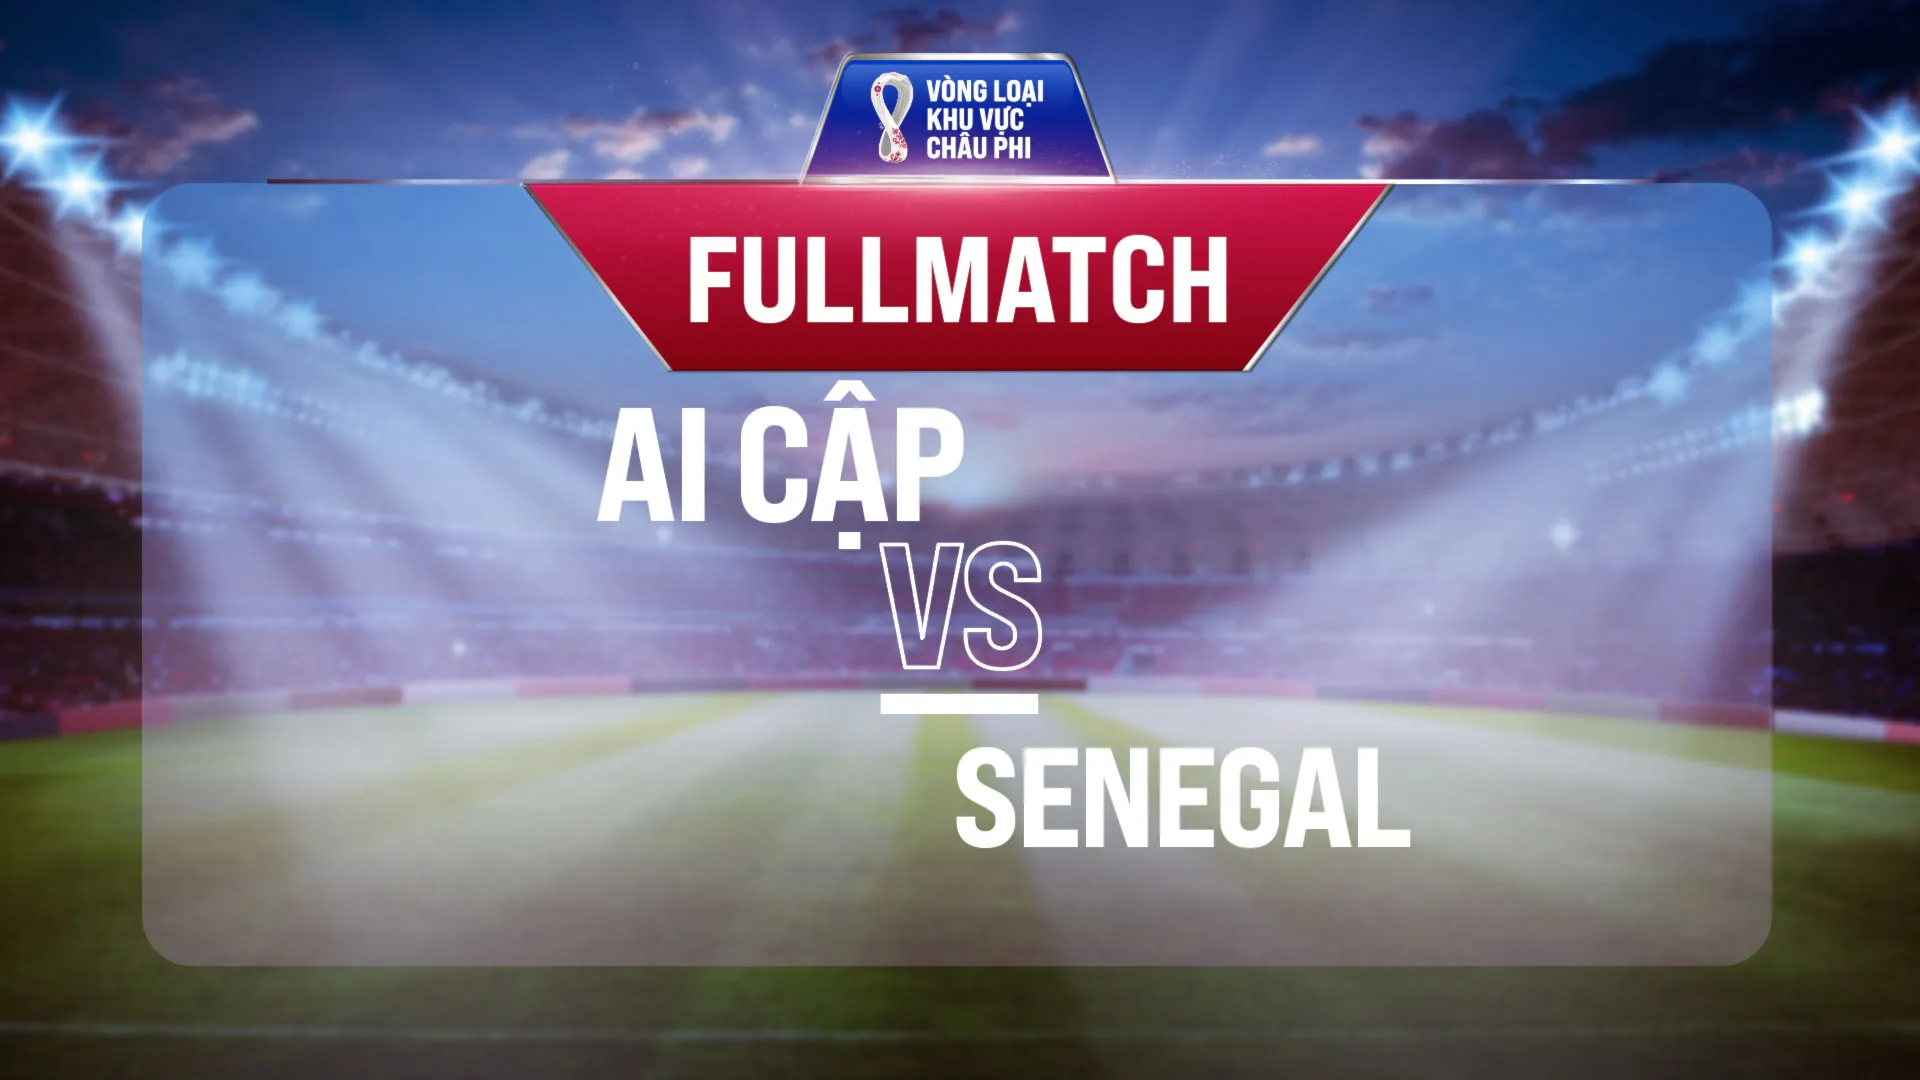 Full match Ai Cập - Senegal (Lượt trận 1 Vòng Loại thứ 3 World Cup 2022 - Khu vực châu Phi)